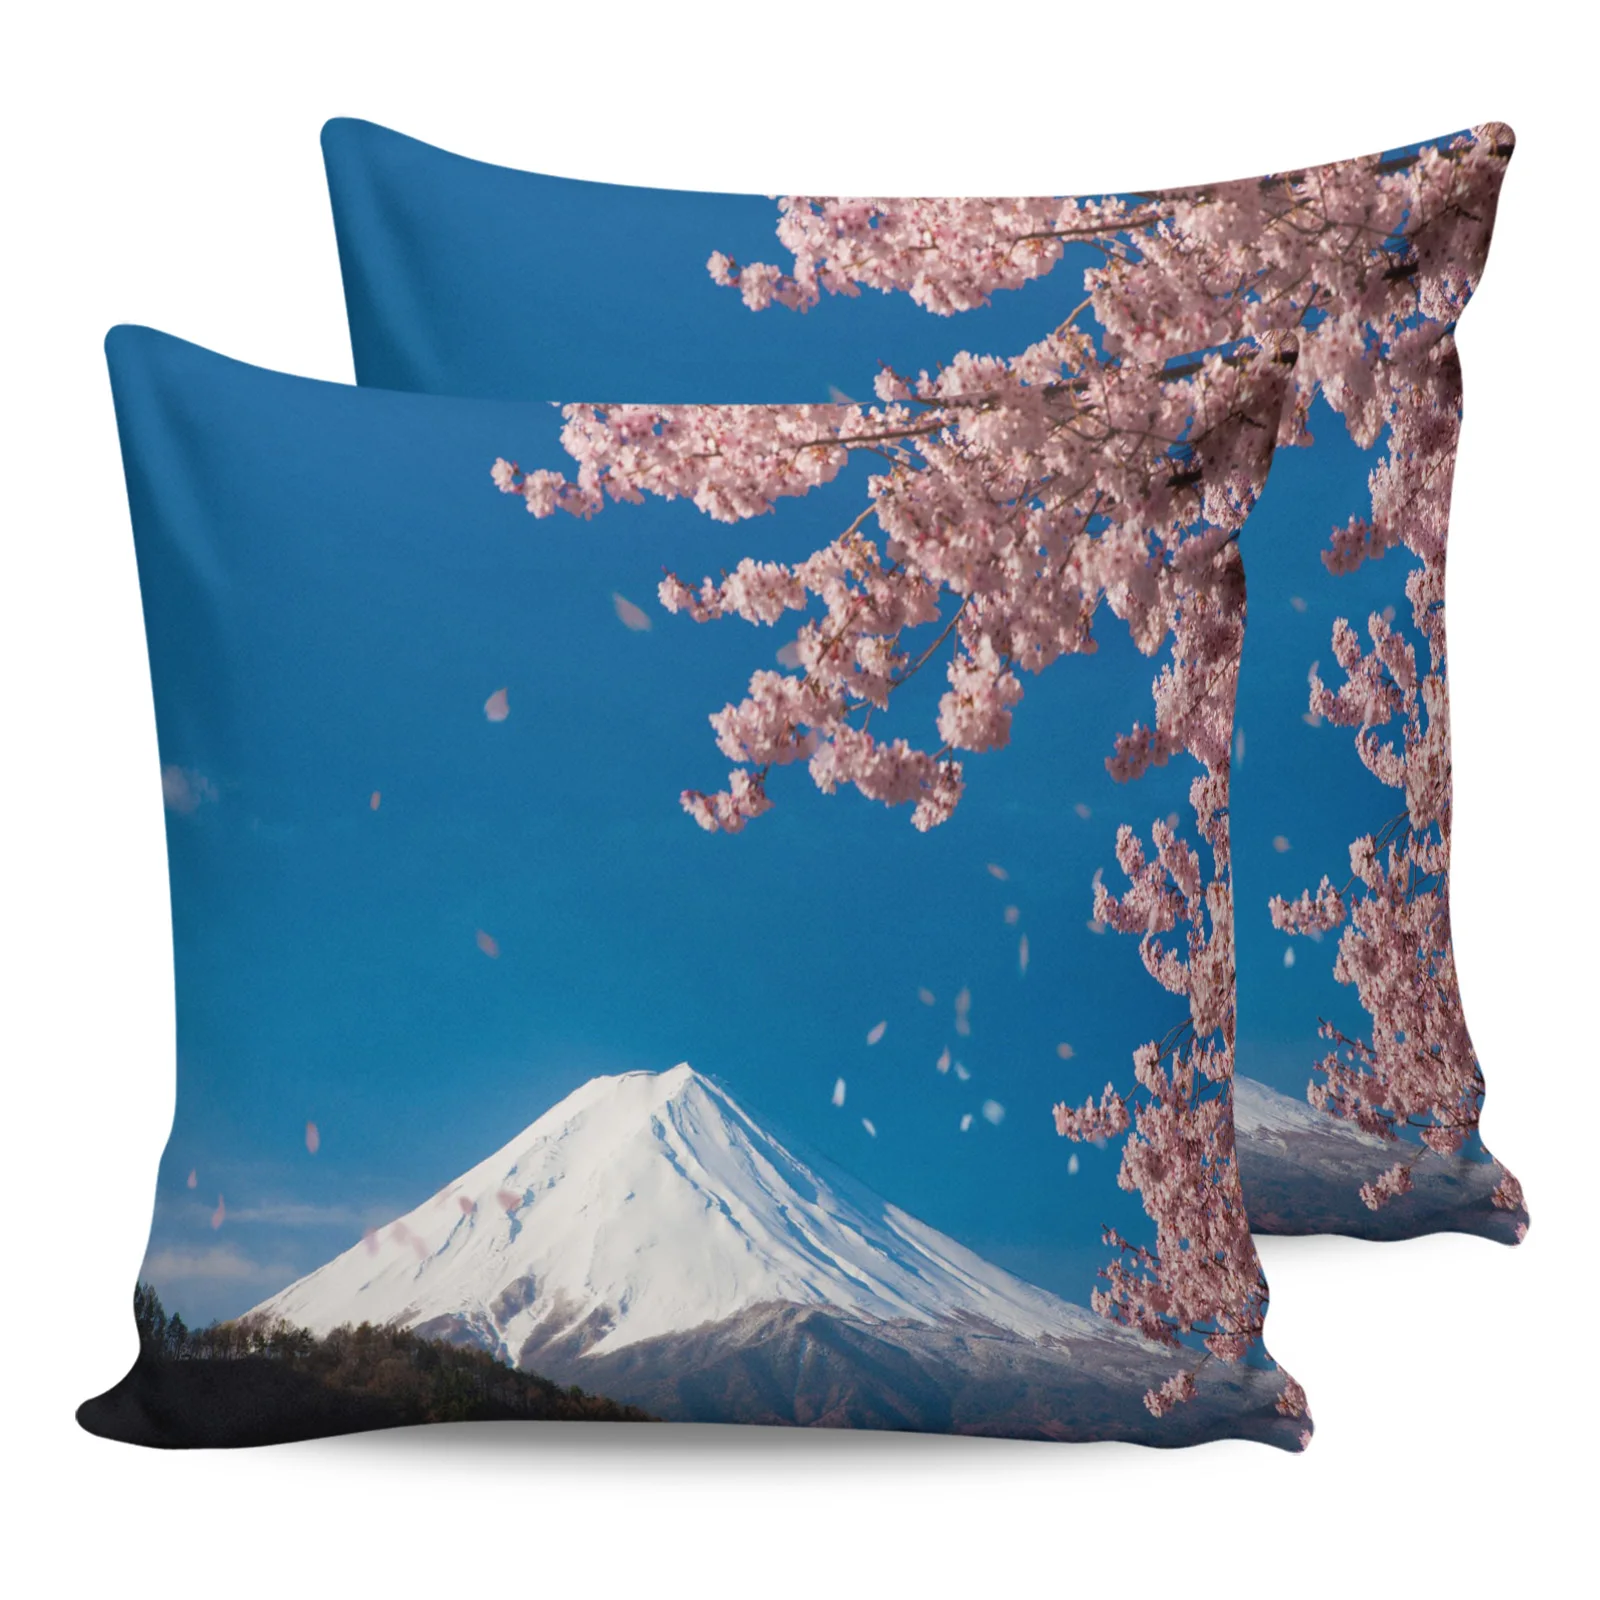 

2 шт. наволочка с креплением Fuji, японский цветок вишни, чехол для диванной подушки, чехол для детской кровати, домашняя фотография